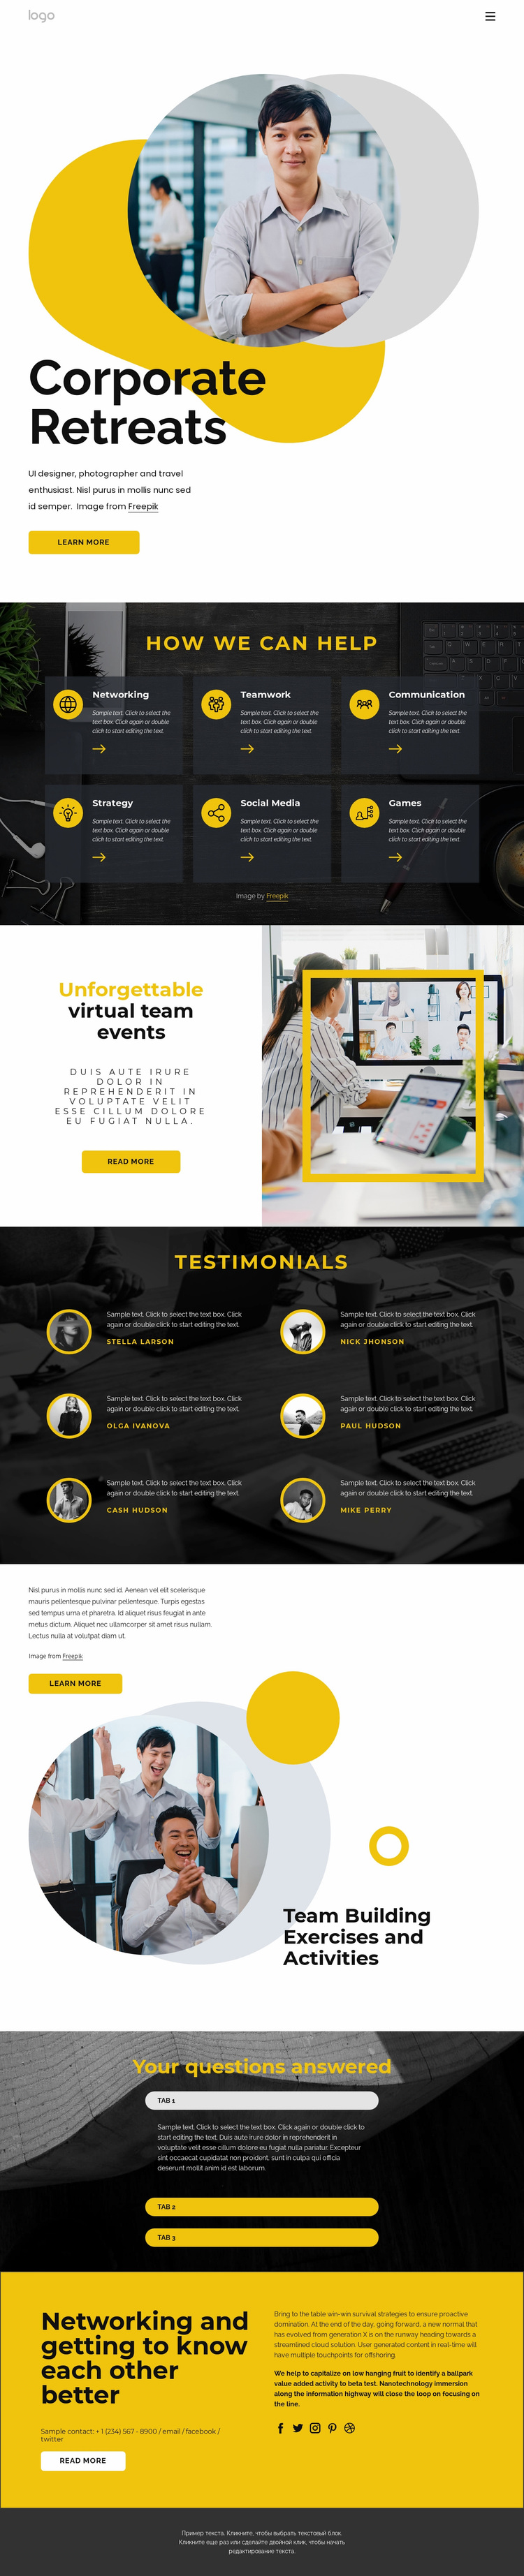 Corporate retreats Website Design